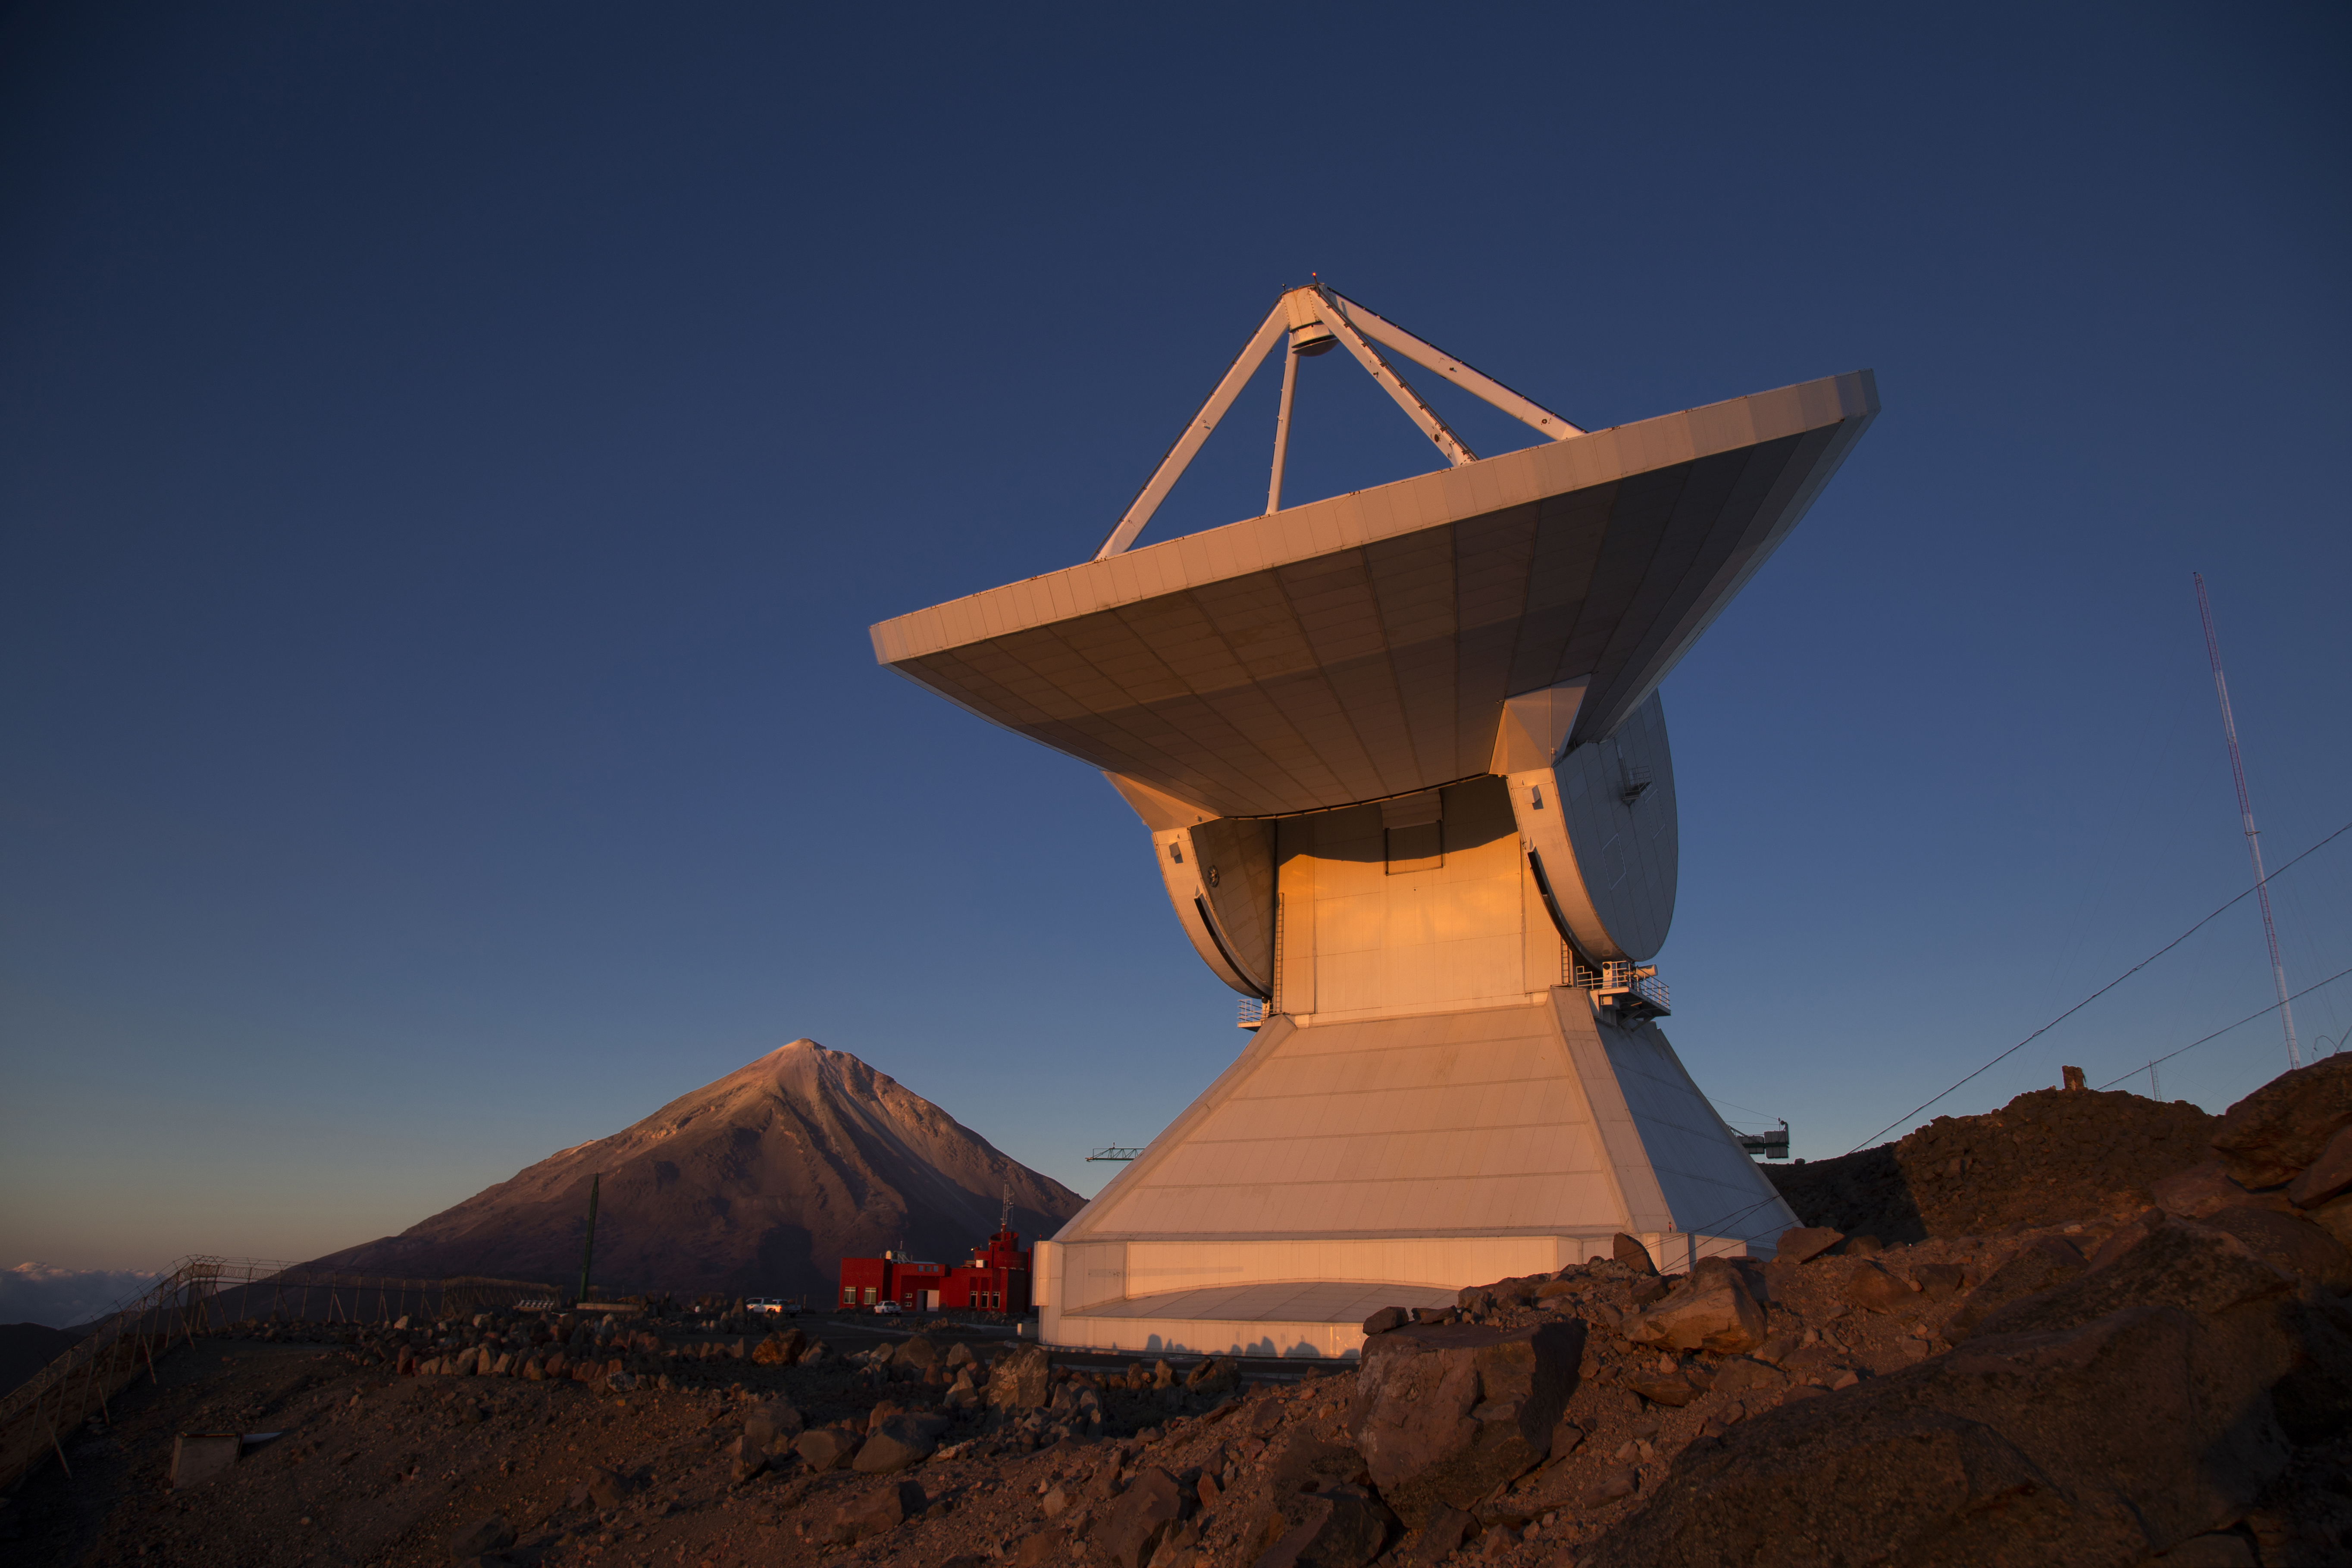 Large Millimeter Telescope